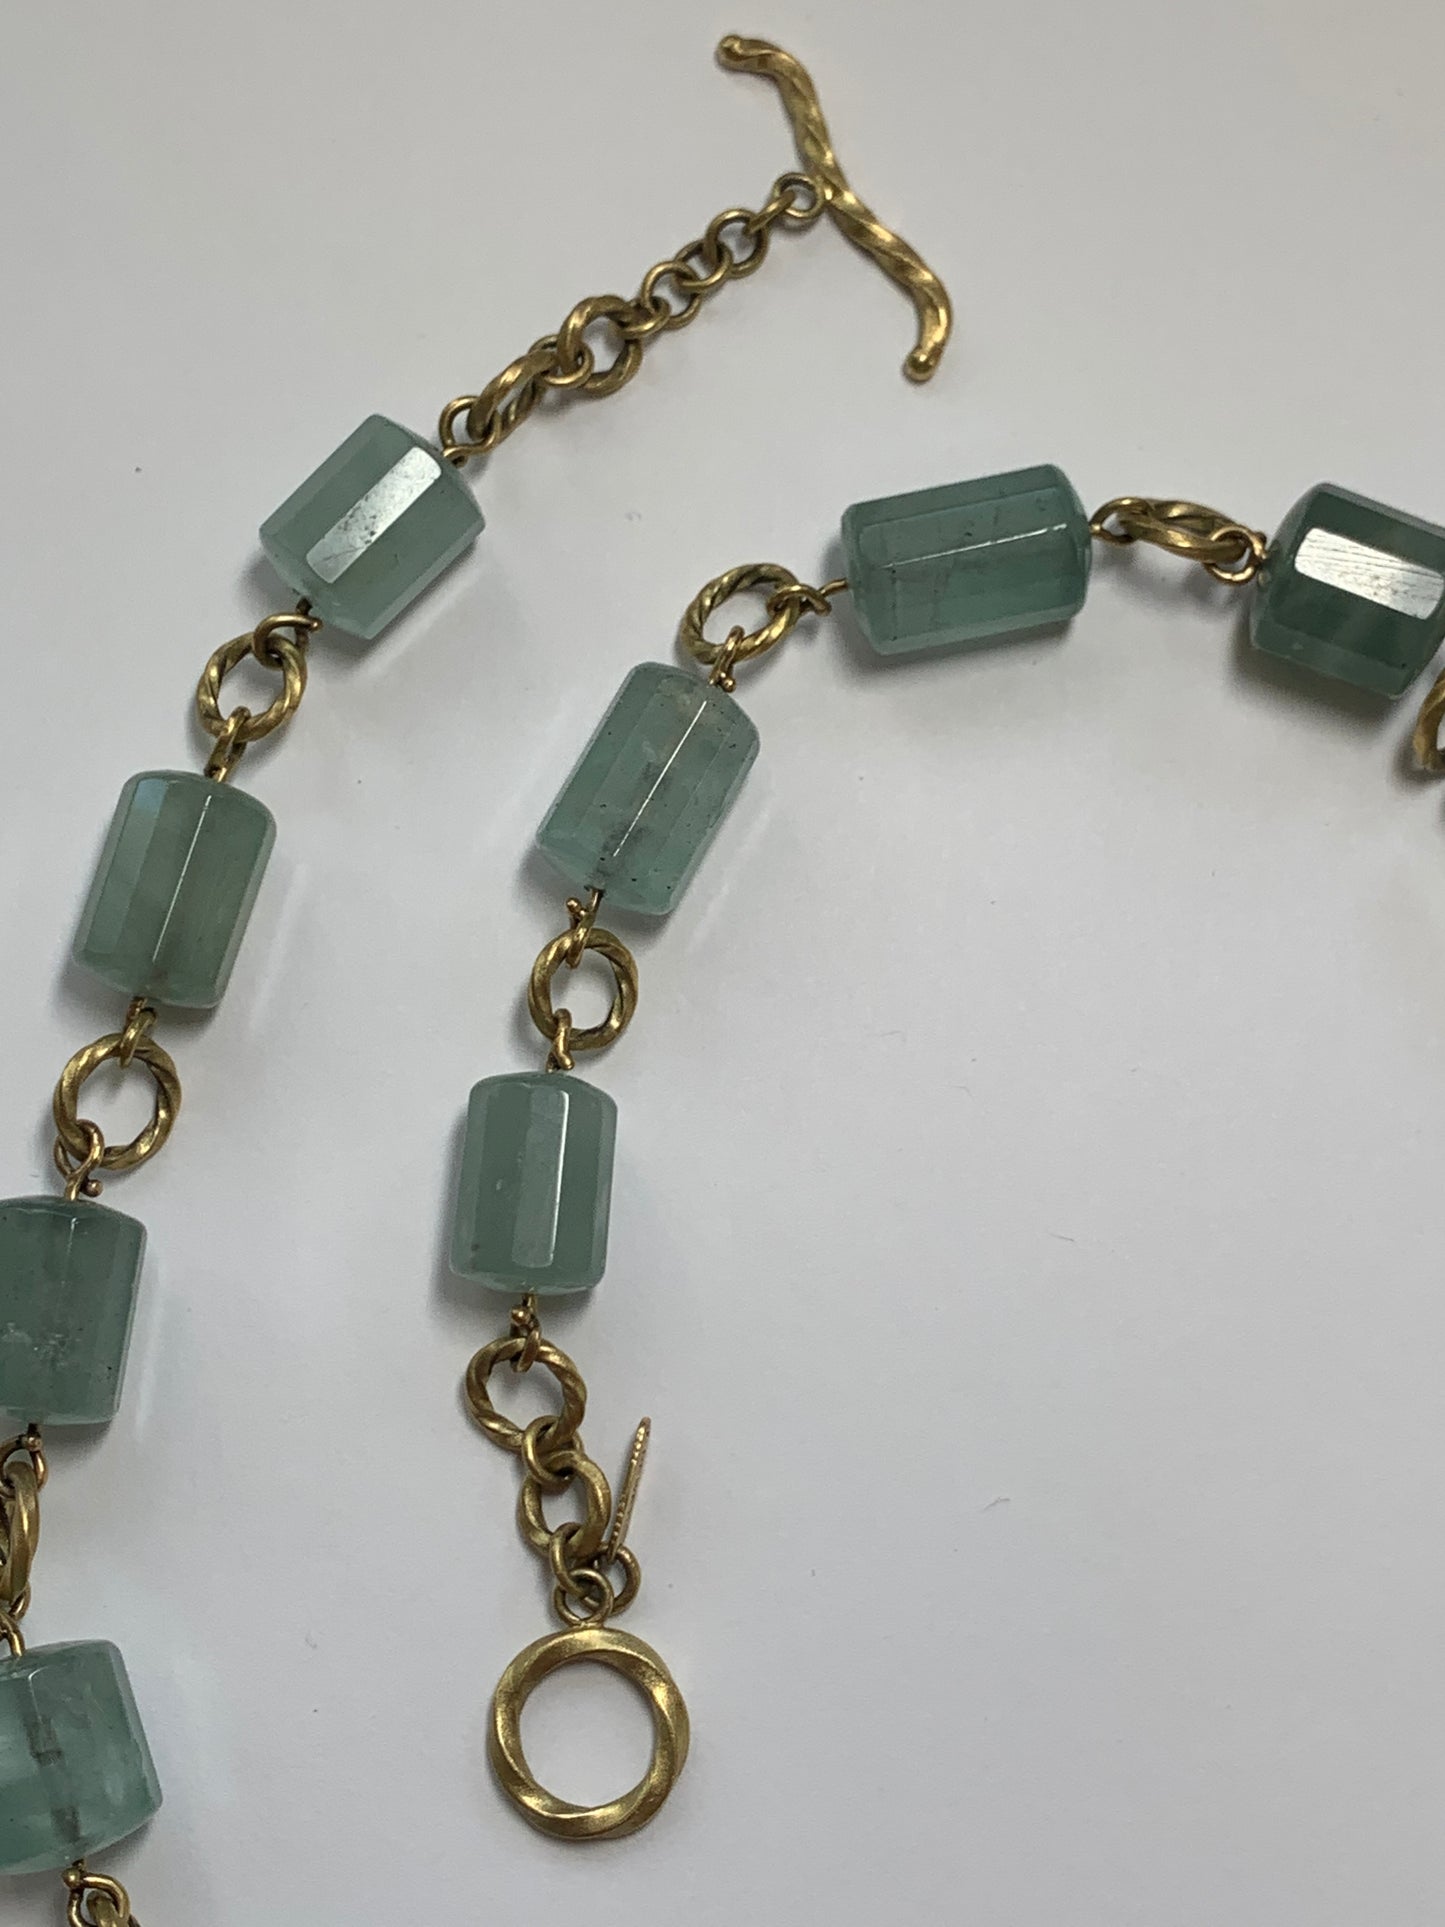 New - Brazilian Aquamarine Chain Necklace - Recycled 18k gold - by Jenn Dewey